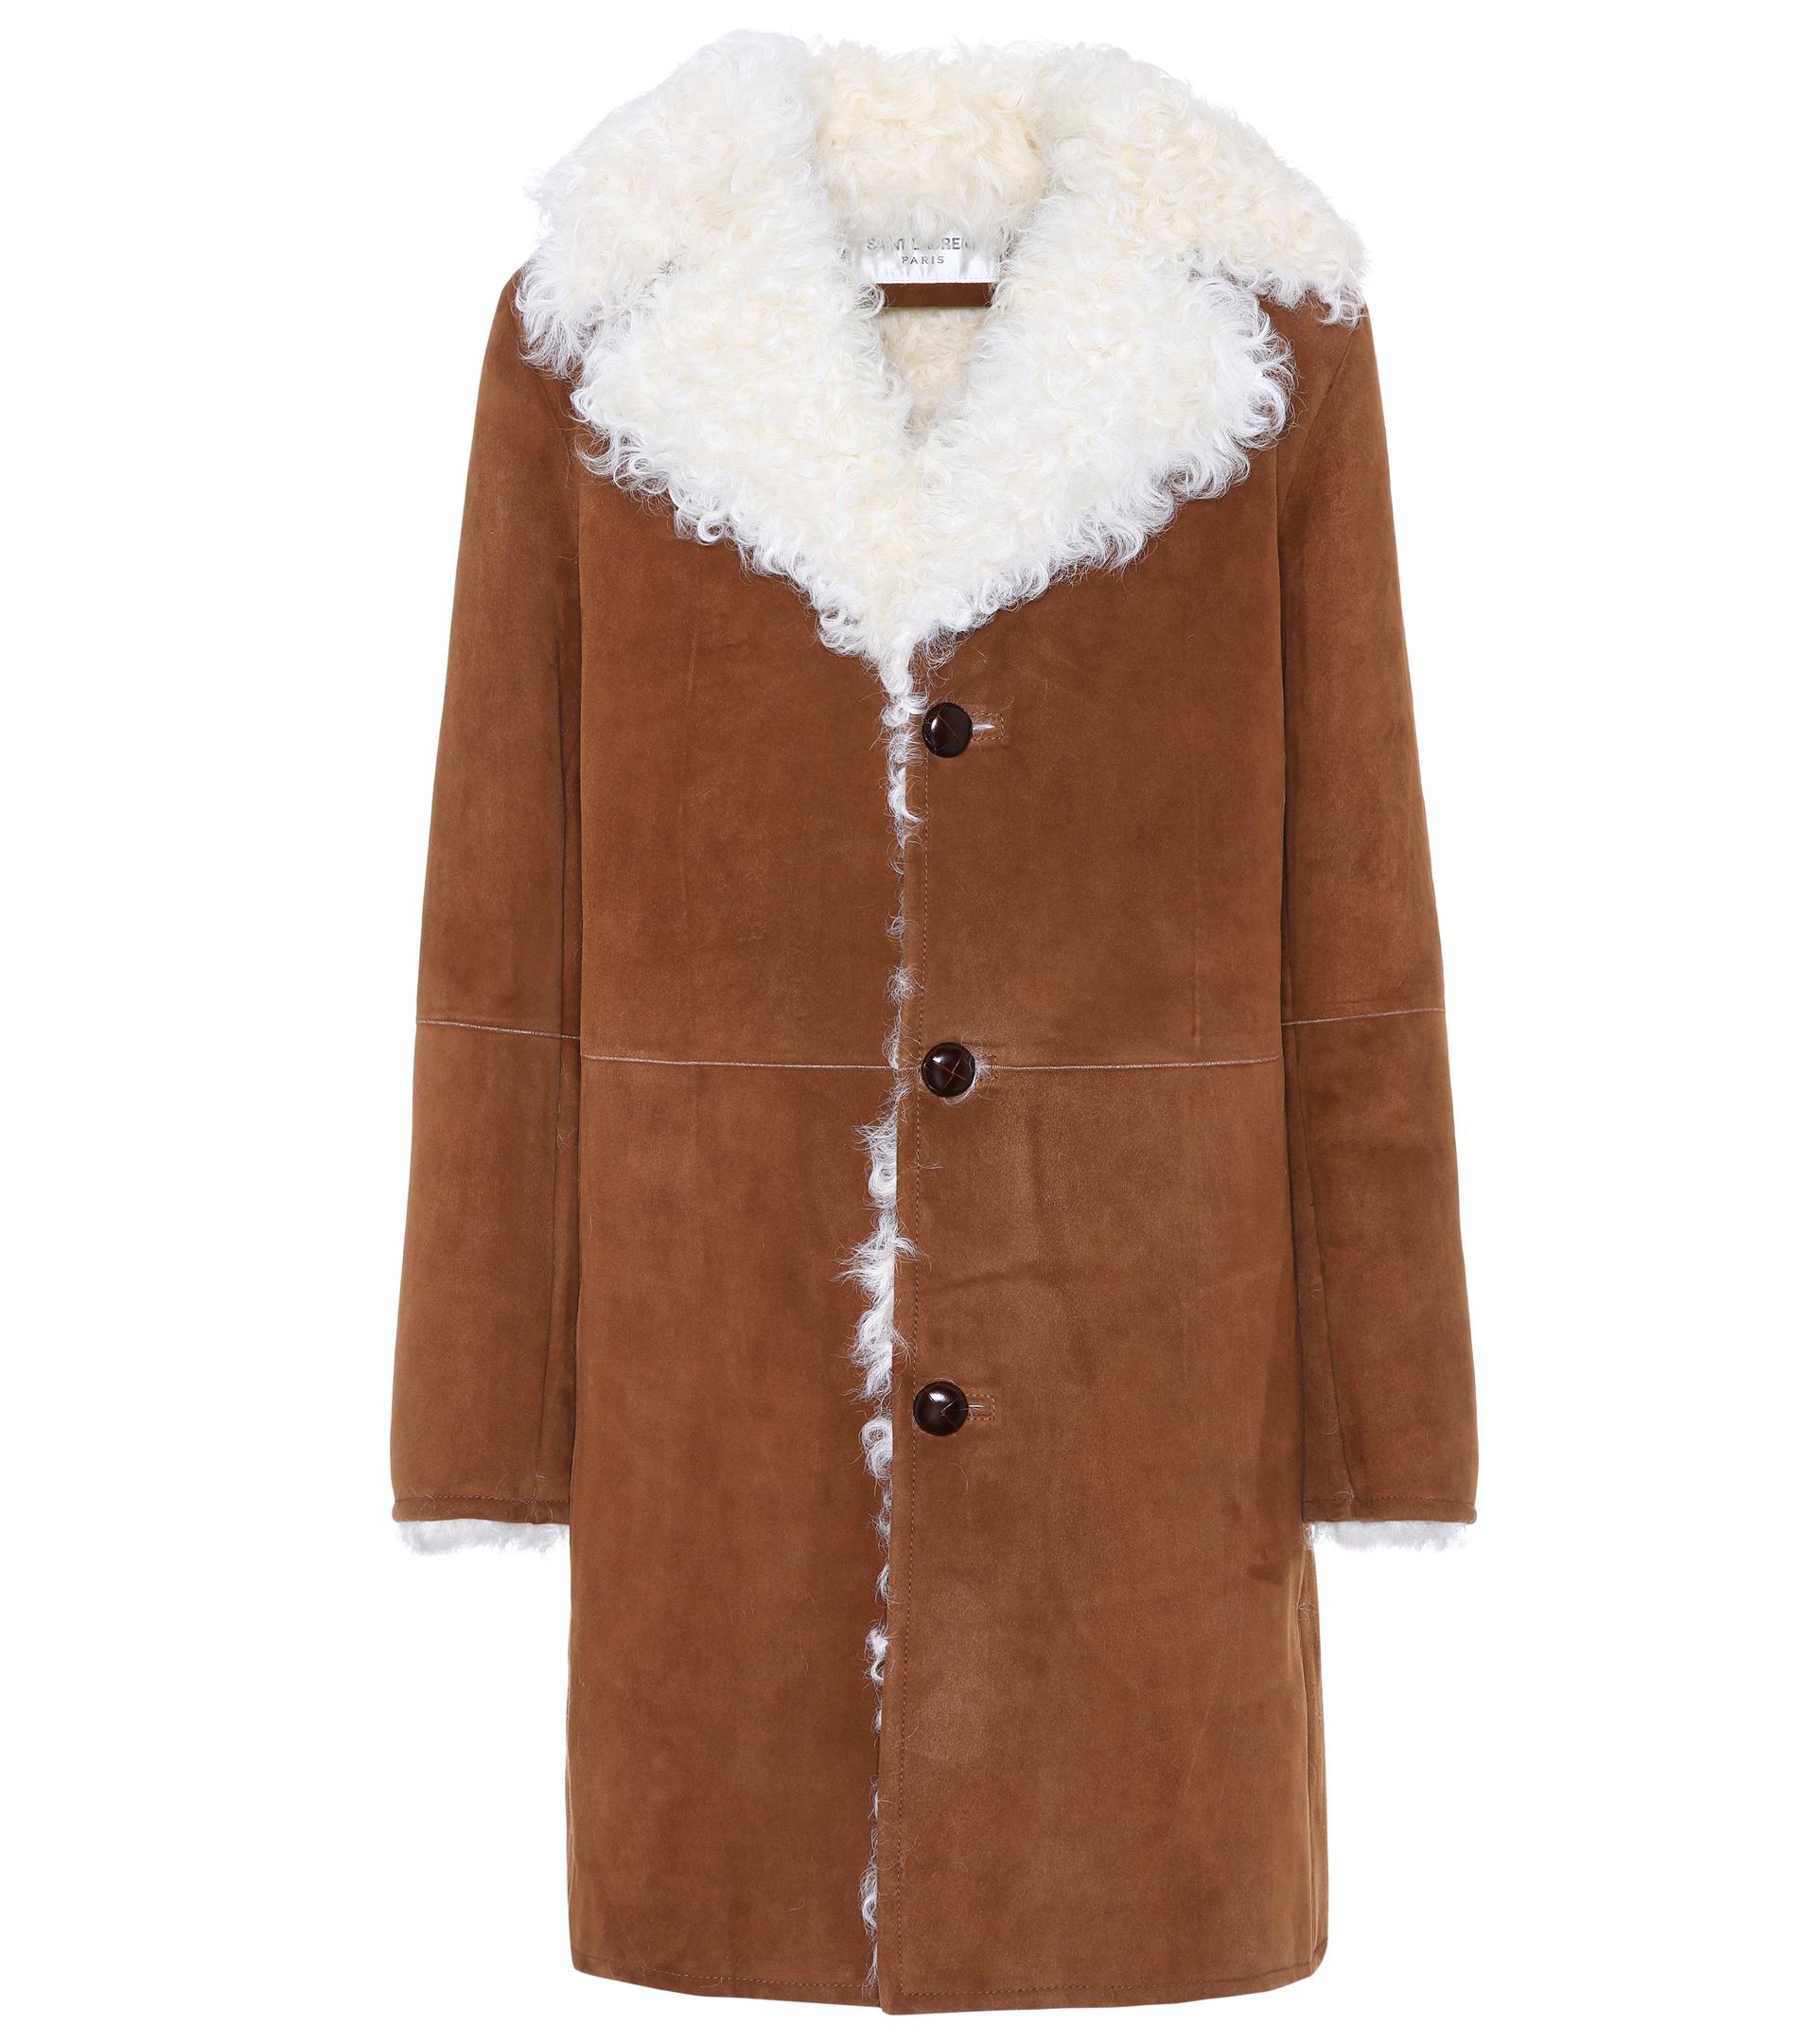 Saint Laurent Fur-lined Suede Coat in Brown - Lyst